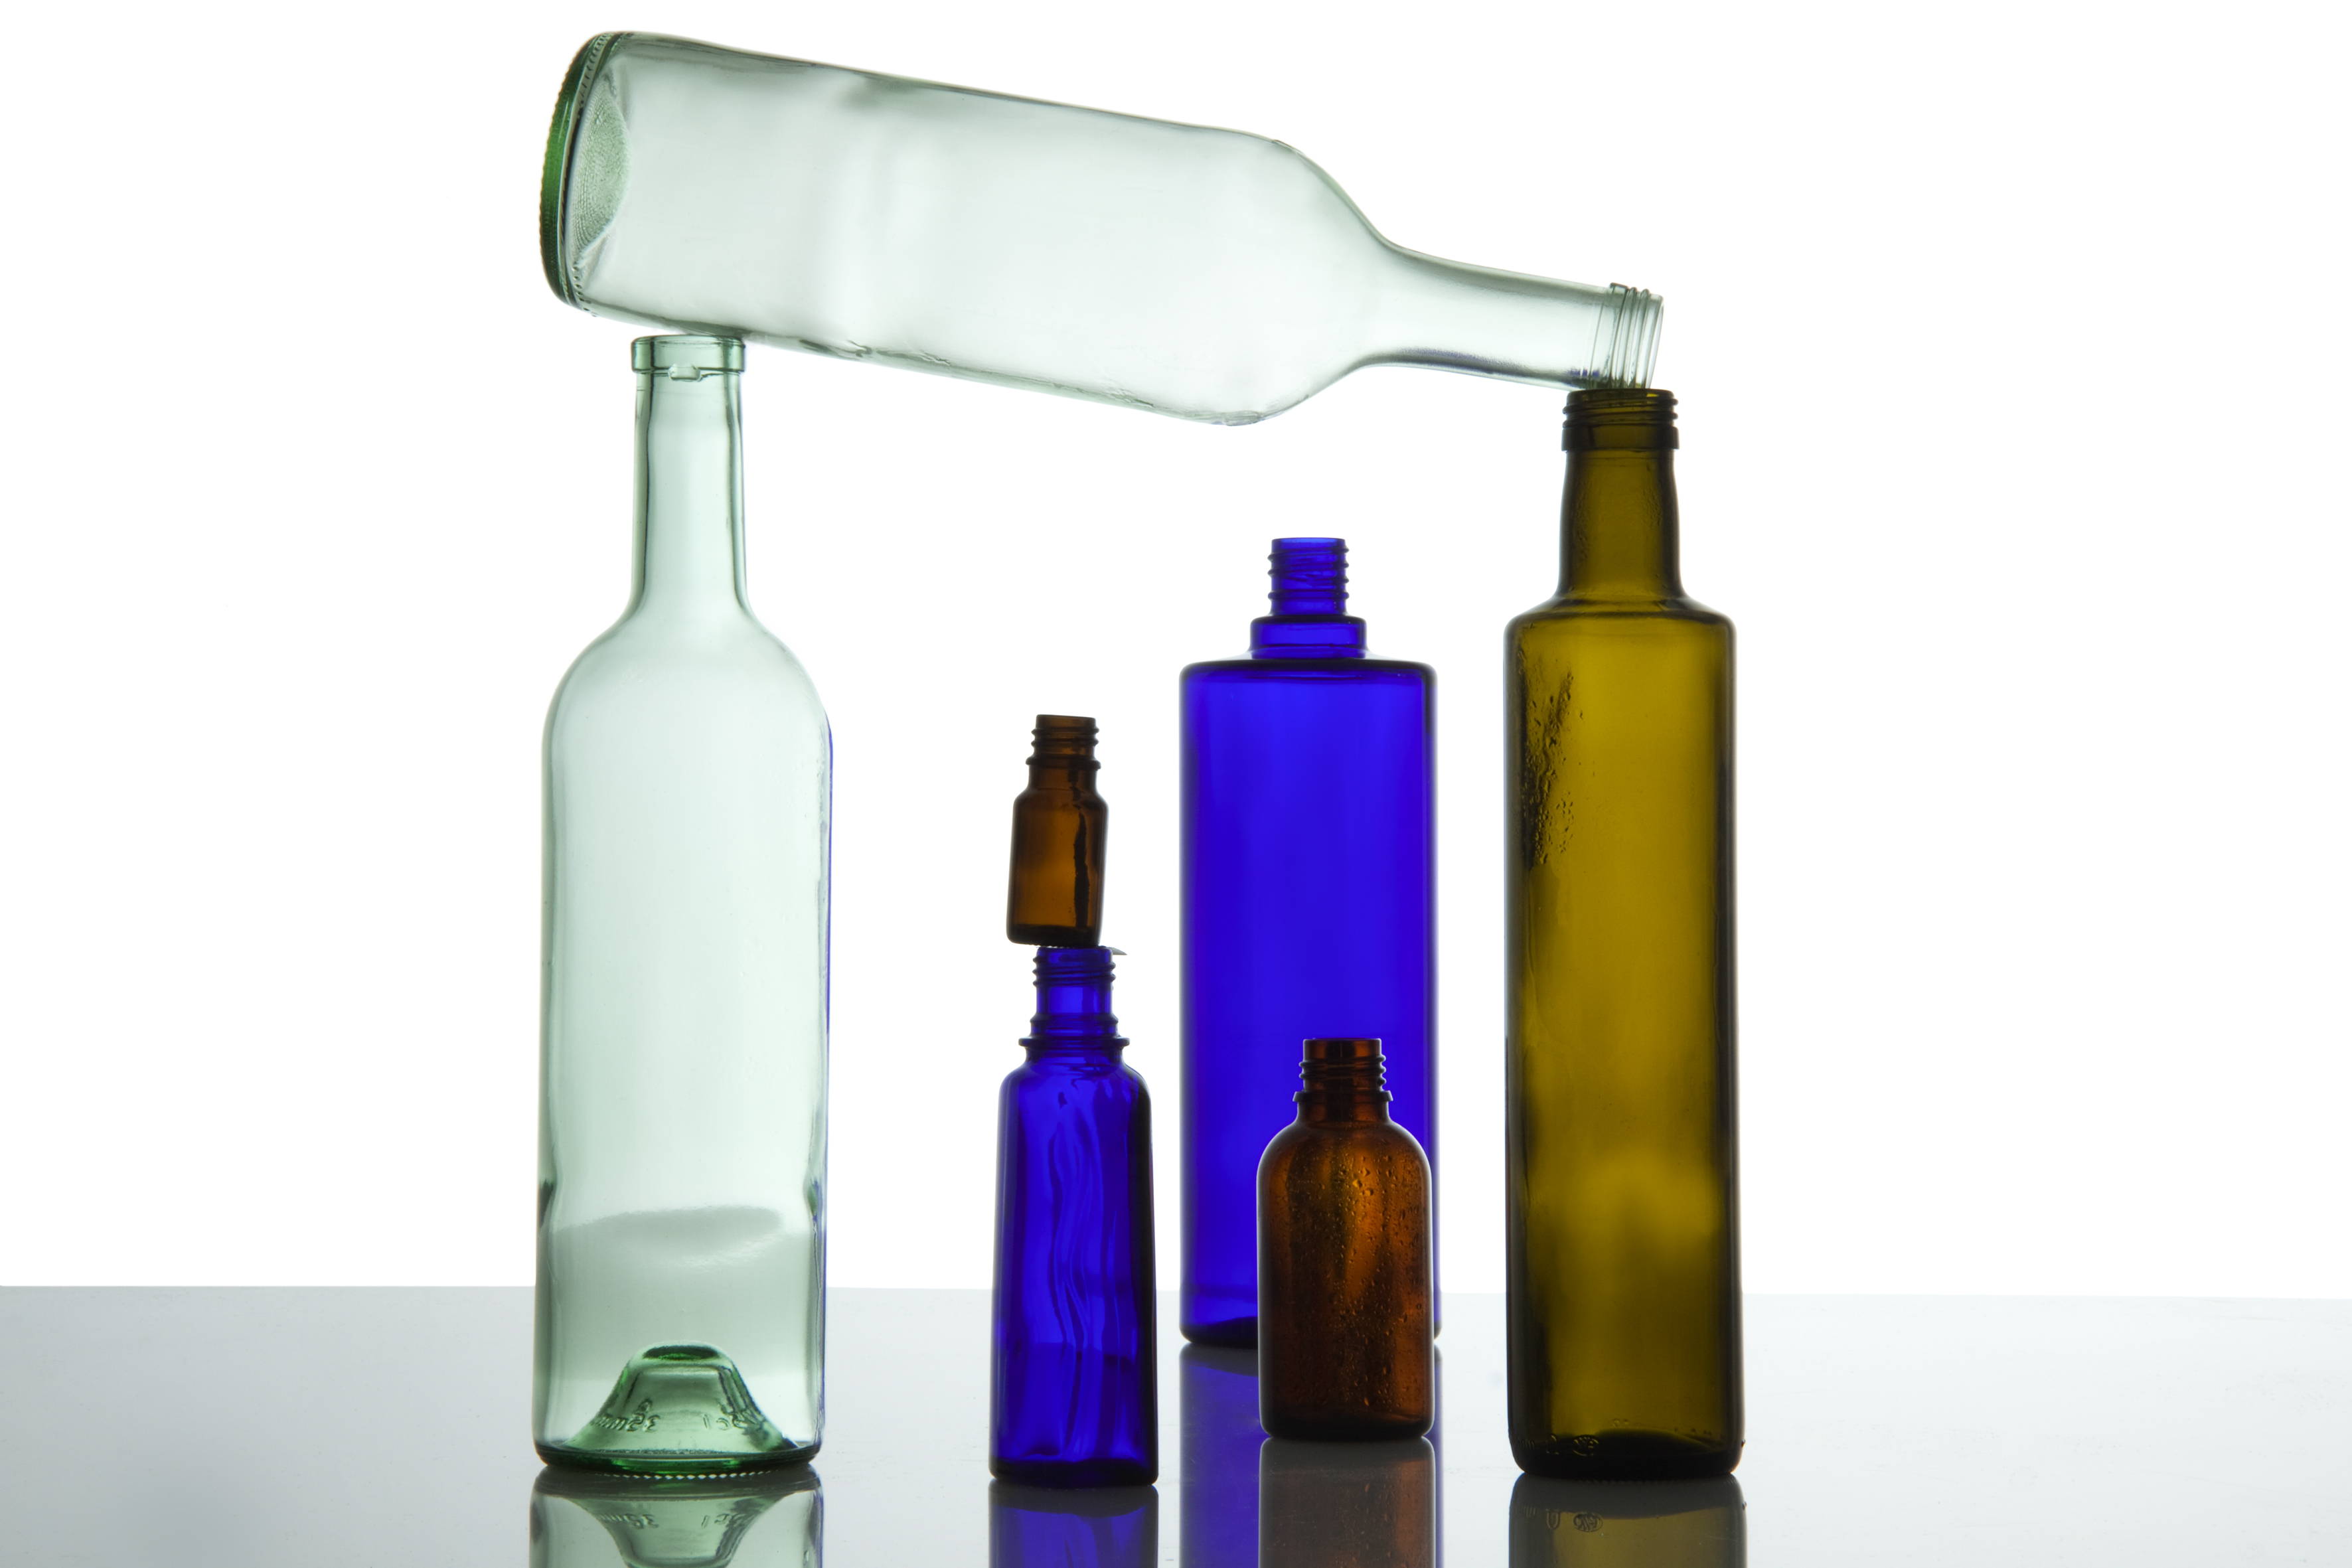 Mehrere farbige Glasverpackungen tragen eine hellgrüne leere Glasflasche, die quer über den anderen liegt.